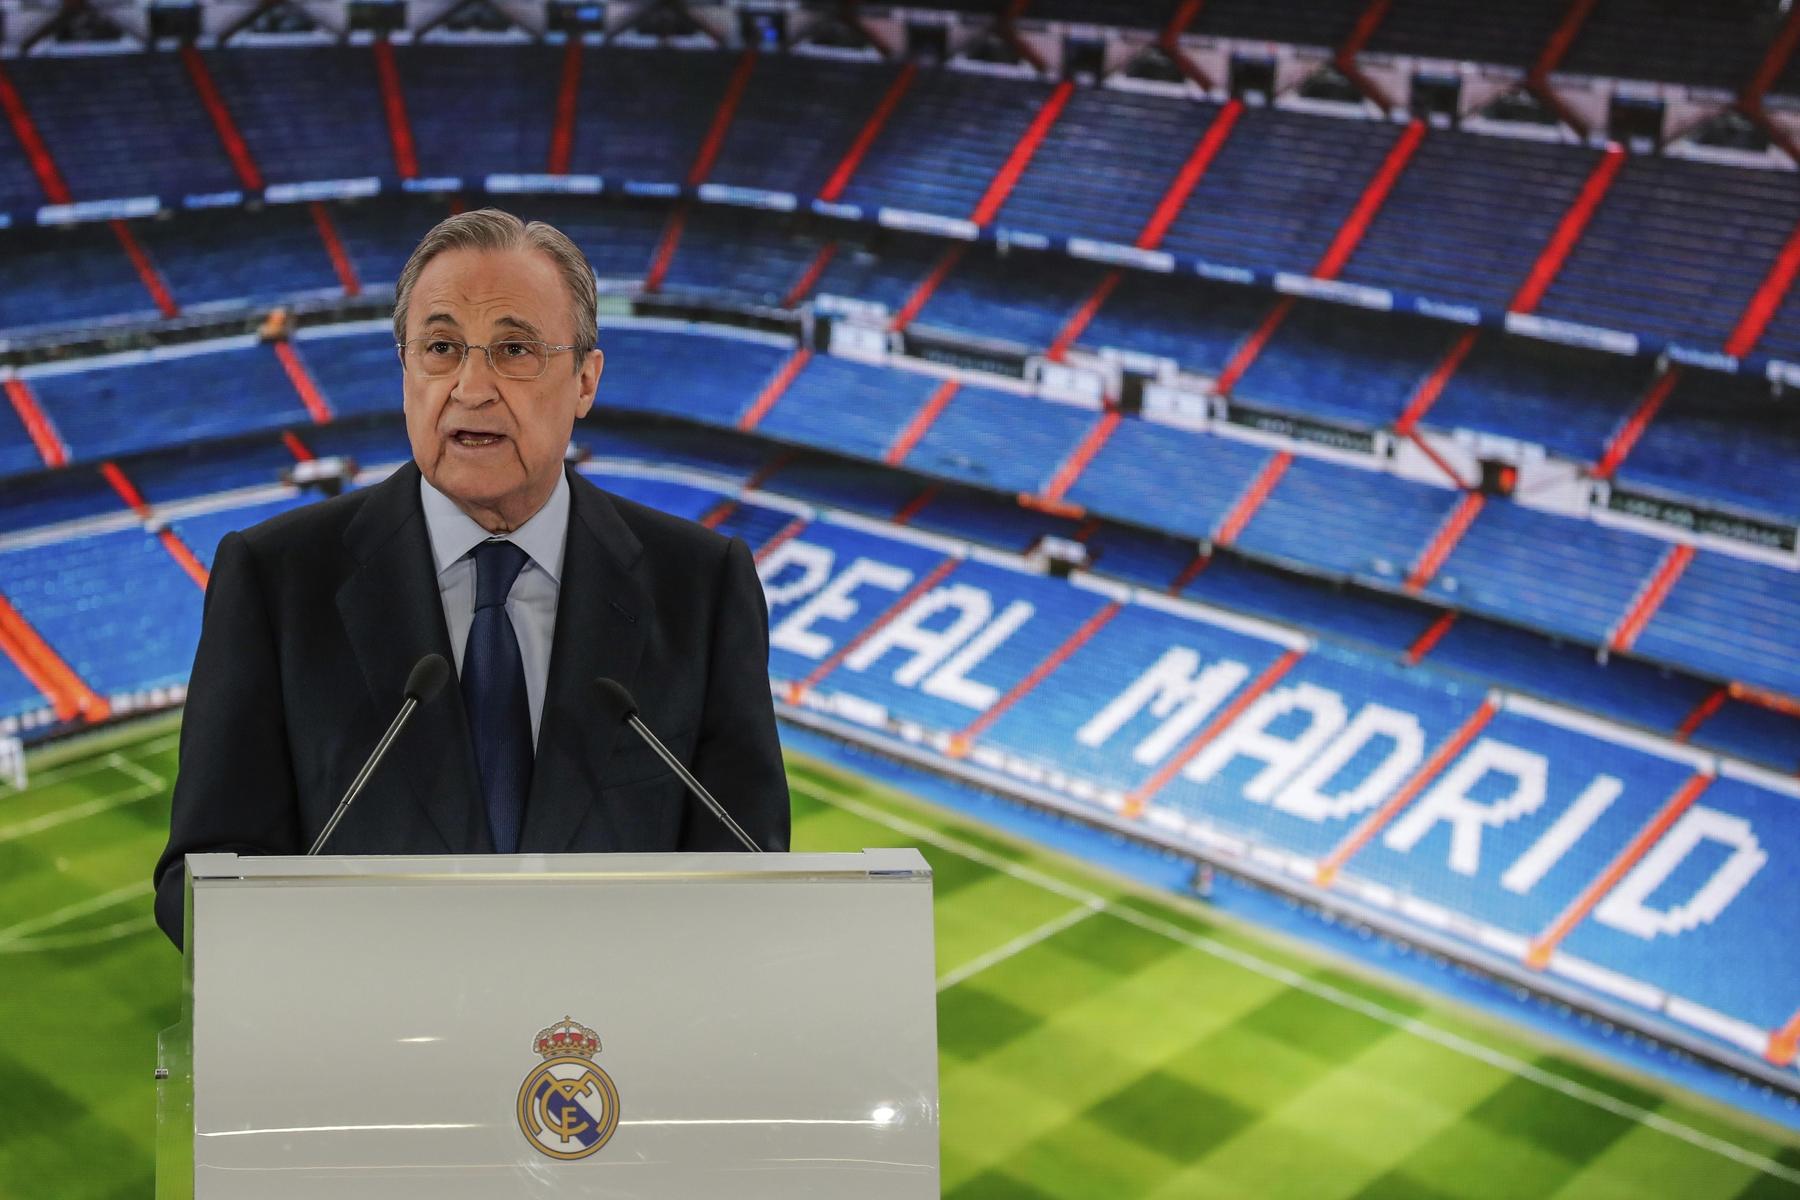 Meisterliches Real Madrid: 61 Titel, aber der Herr Präsident hat noch lange nicht genug